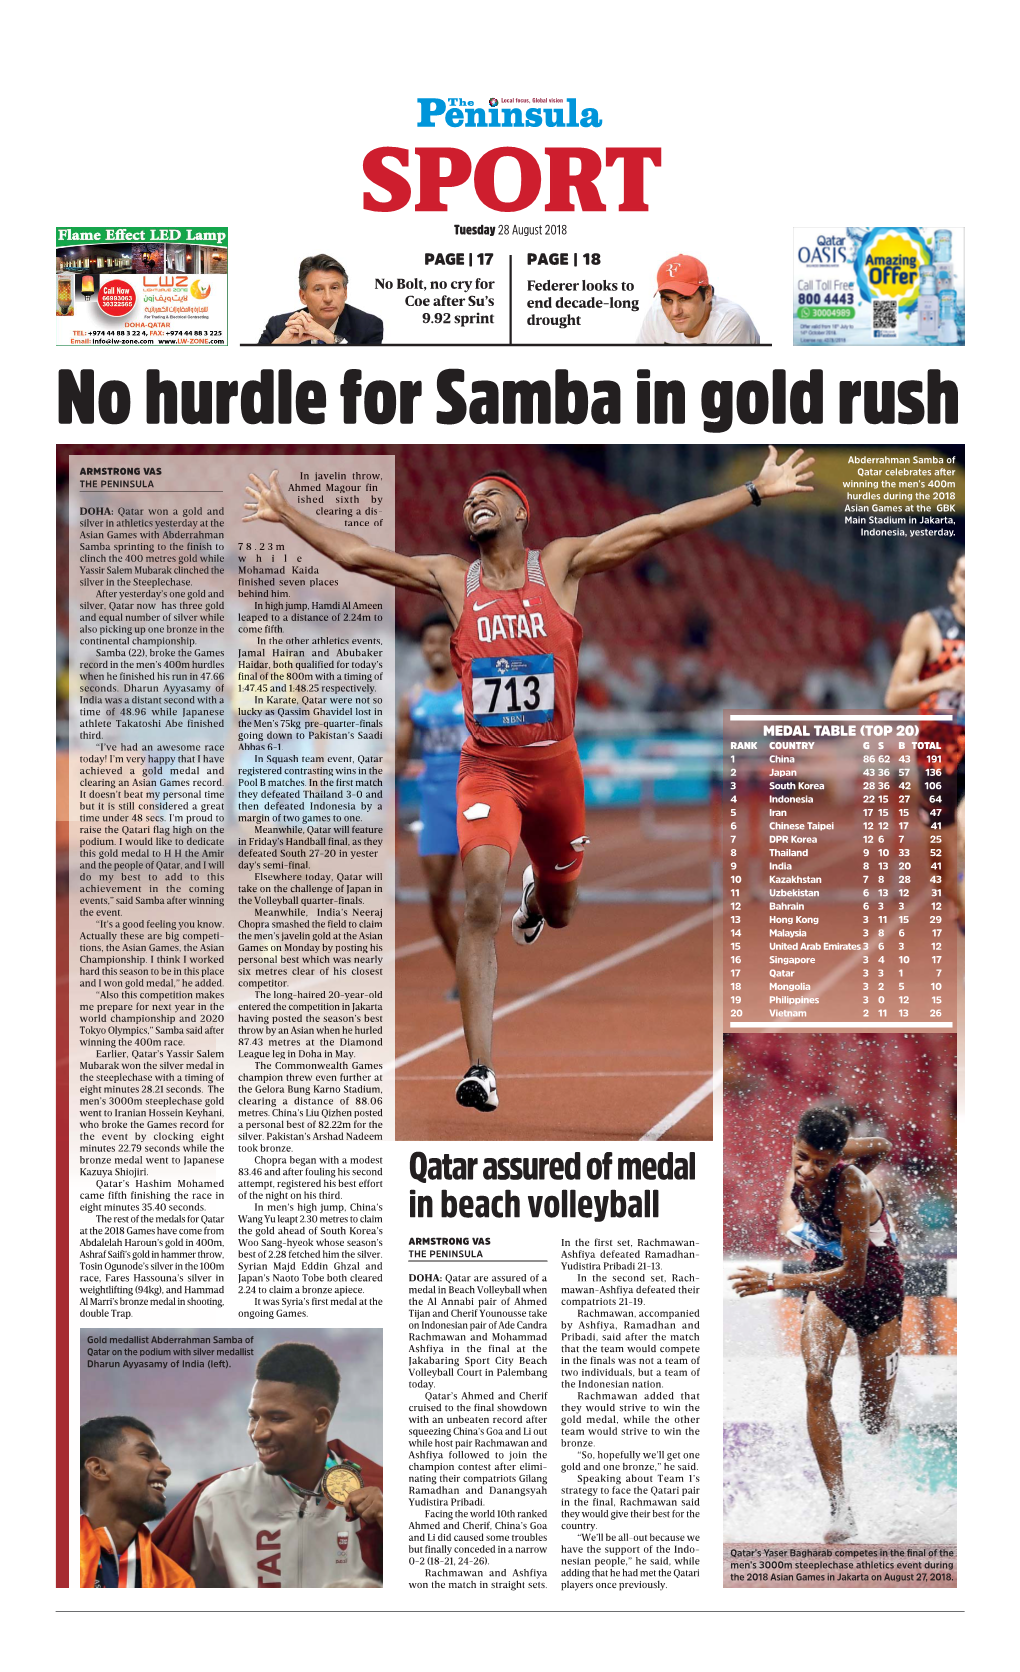 No Hurdle for Samba in Gold Rush